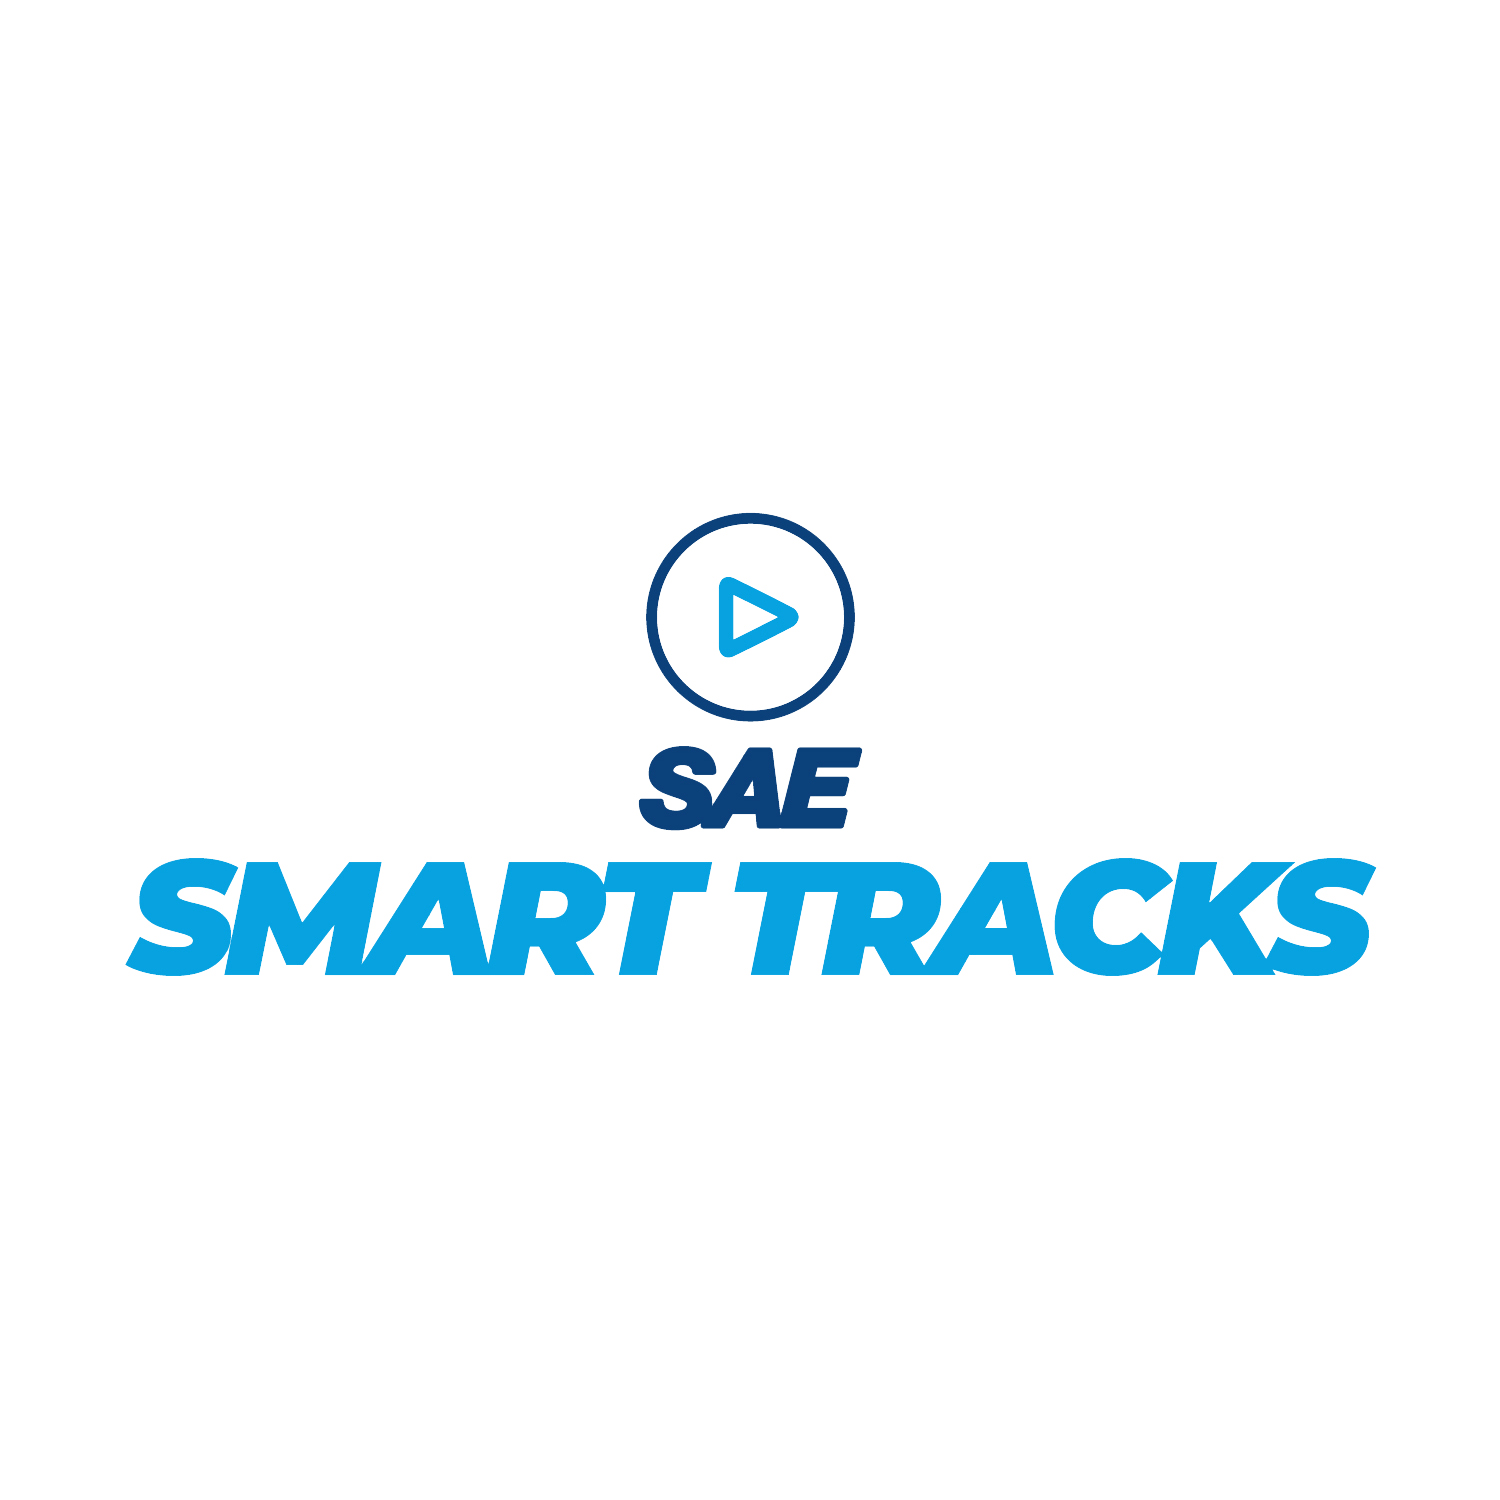 SAE SMART TRACK | Aplicação Manufatura 4.0: cases reais e atuais na Indústria